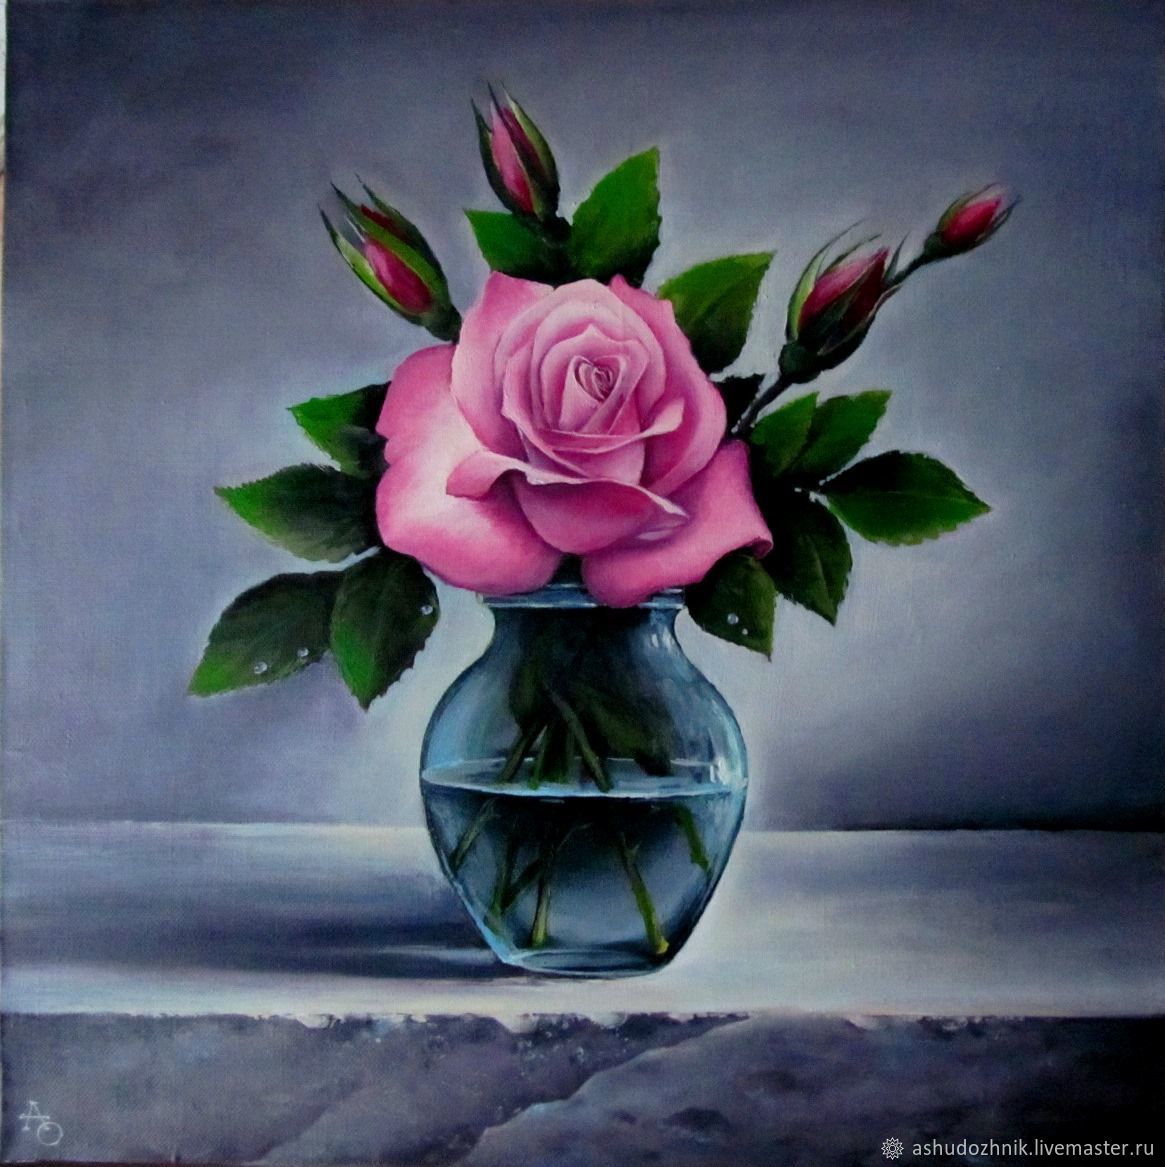 («Розы в Хрустальном бокале», 1882—1883) Мане